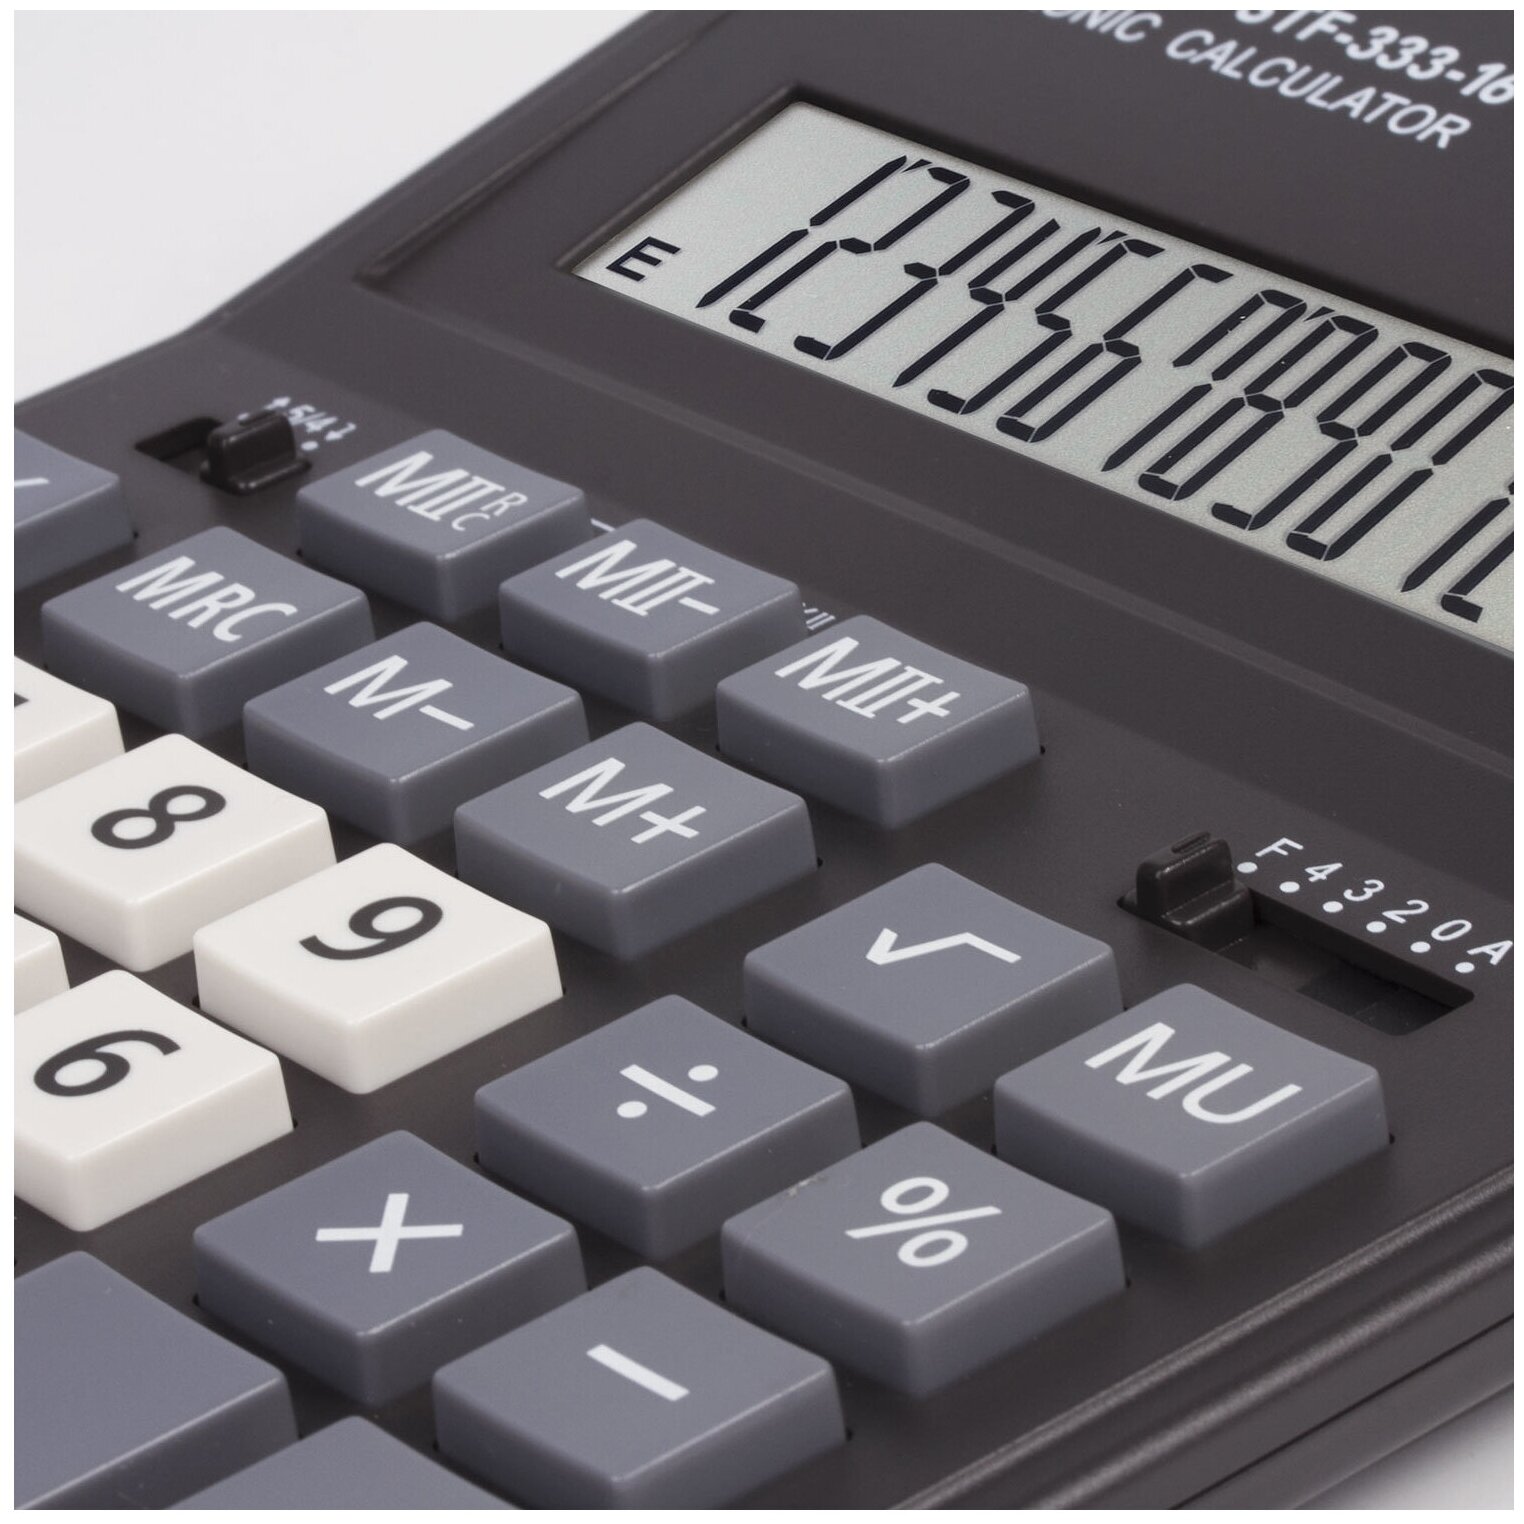 Калькулятор бухгалтерский STAFF PLUS STF-333-16